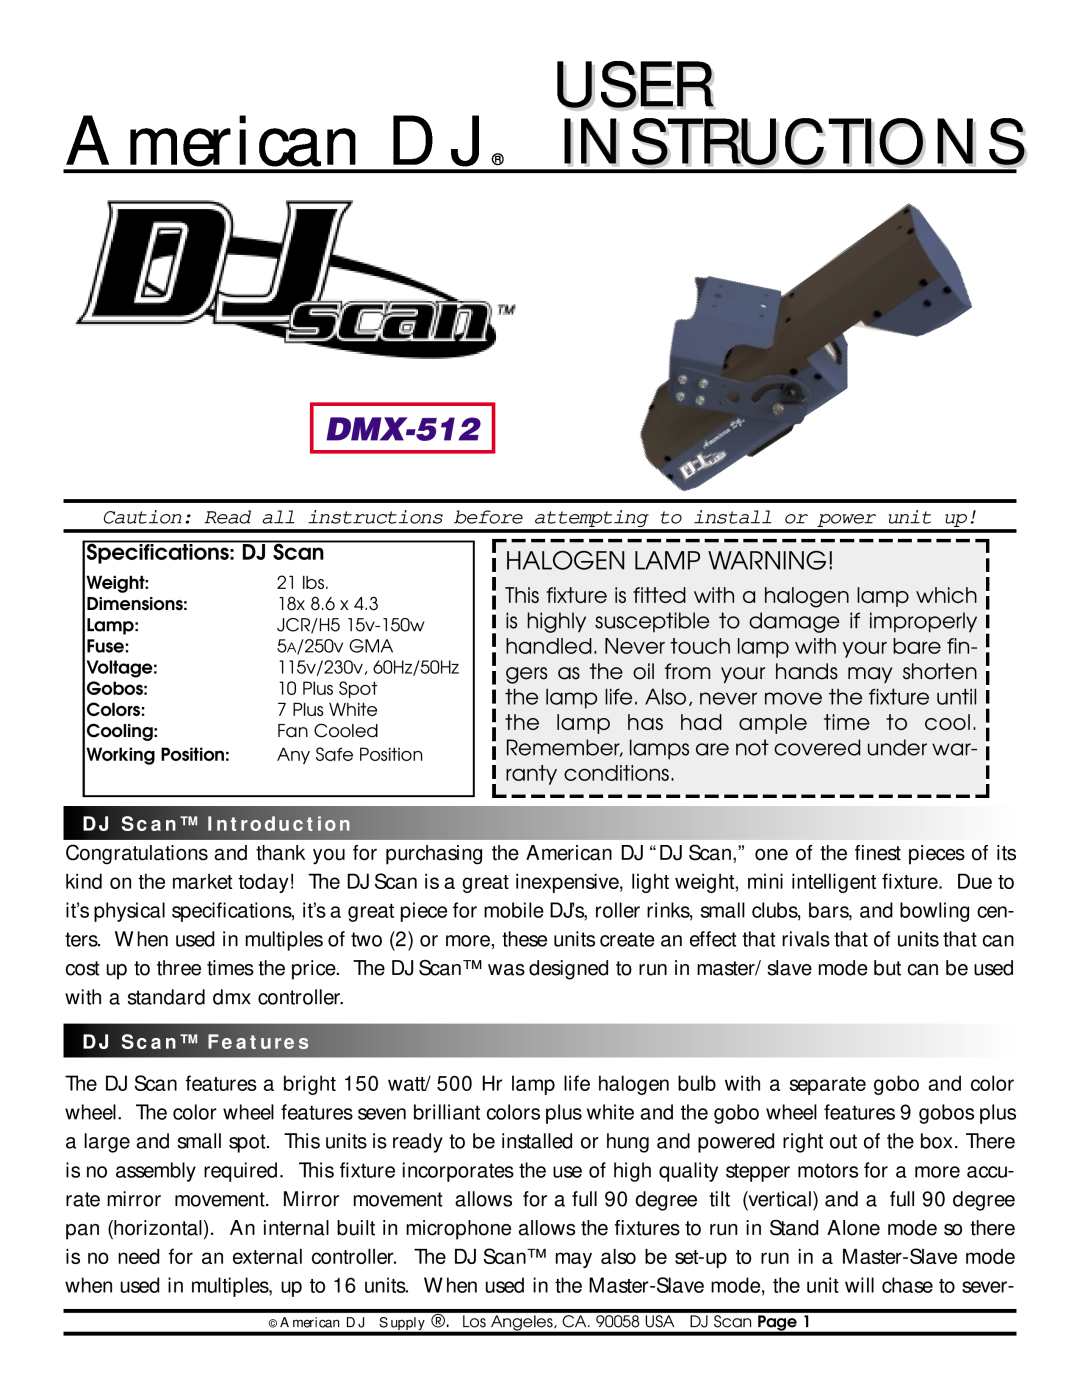 American DJ DMX-512 specifications USER American DJ INSTRUCTIONS, Halogen Lamp Warning 